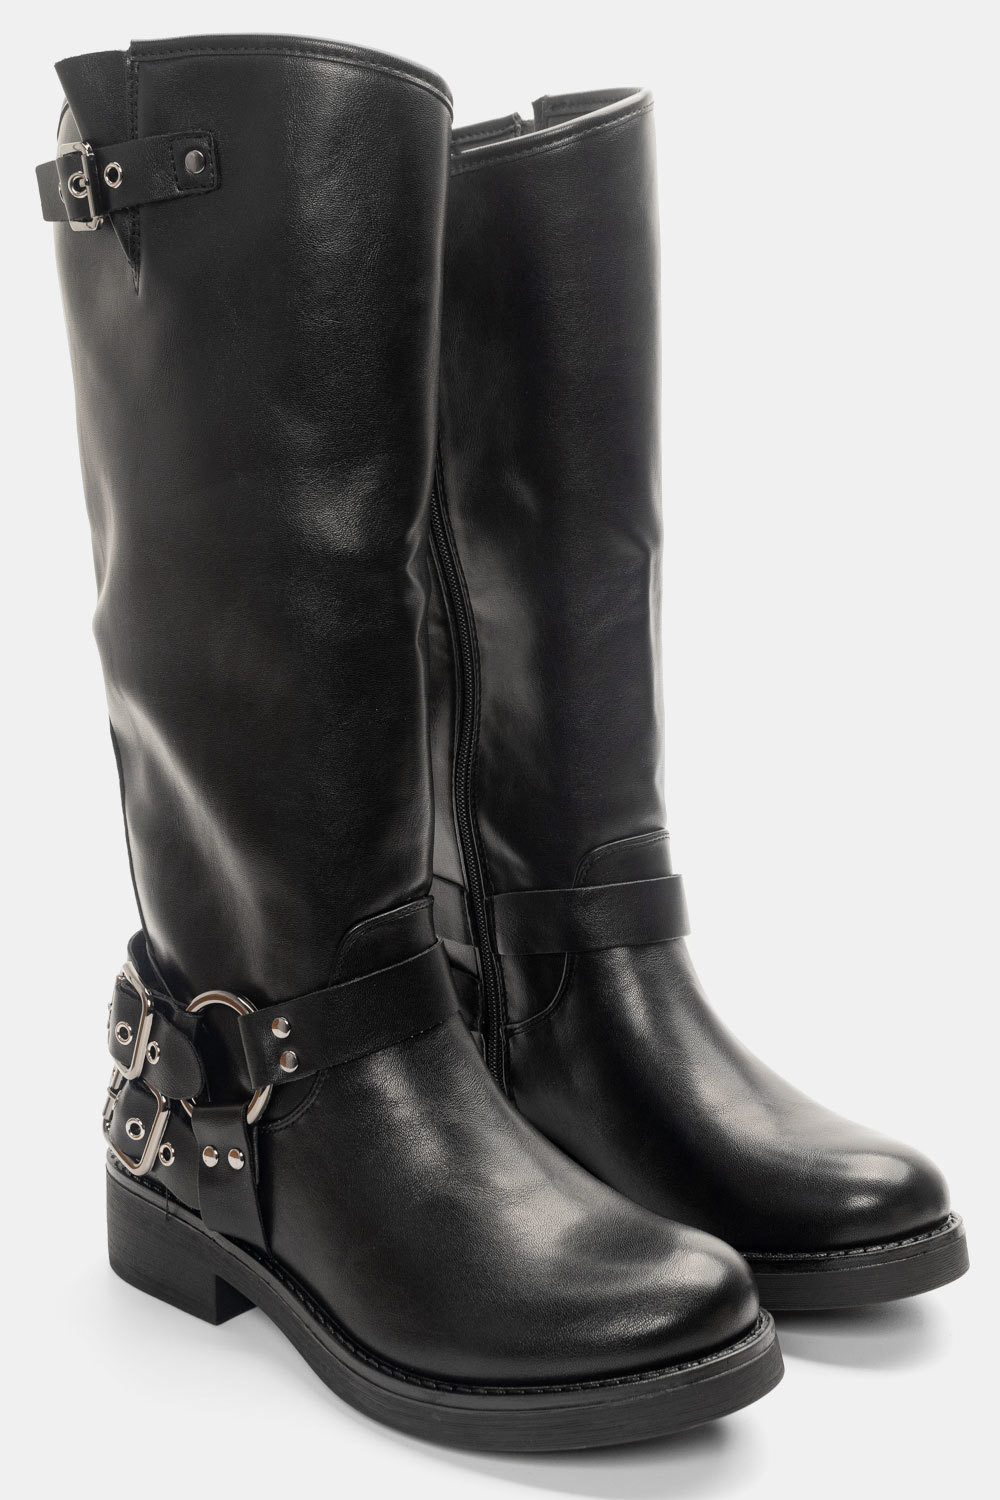 Μπότες με Τρουκς & Διακοσμητικά Λουράκια Μαύρο / RQ-38-black Γυναικεία Mπότες joya.gr